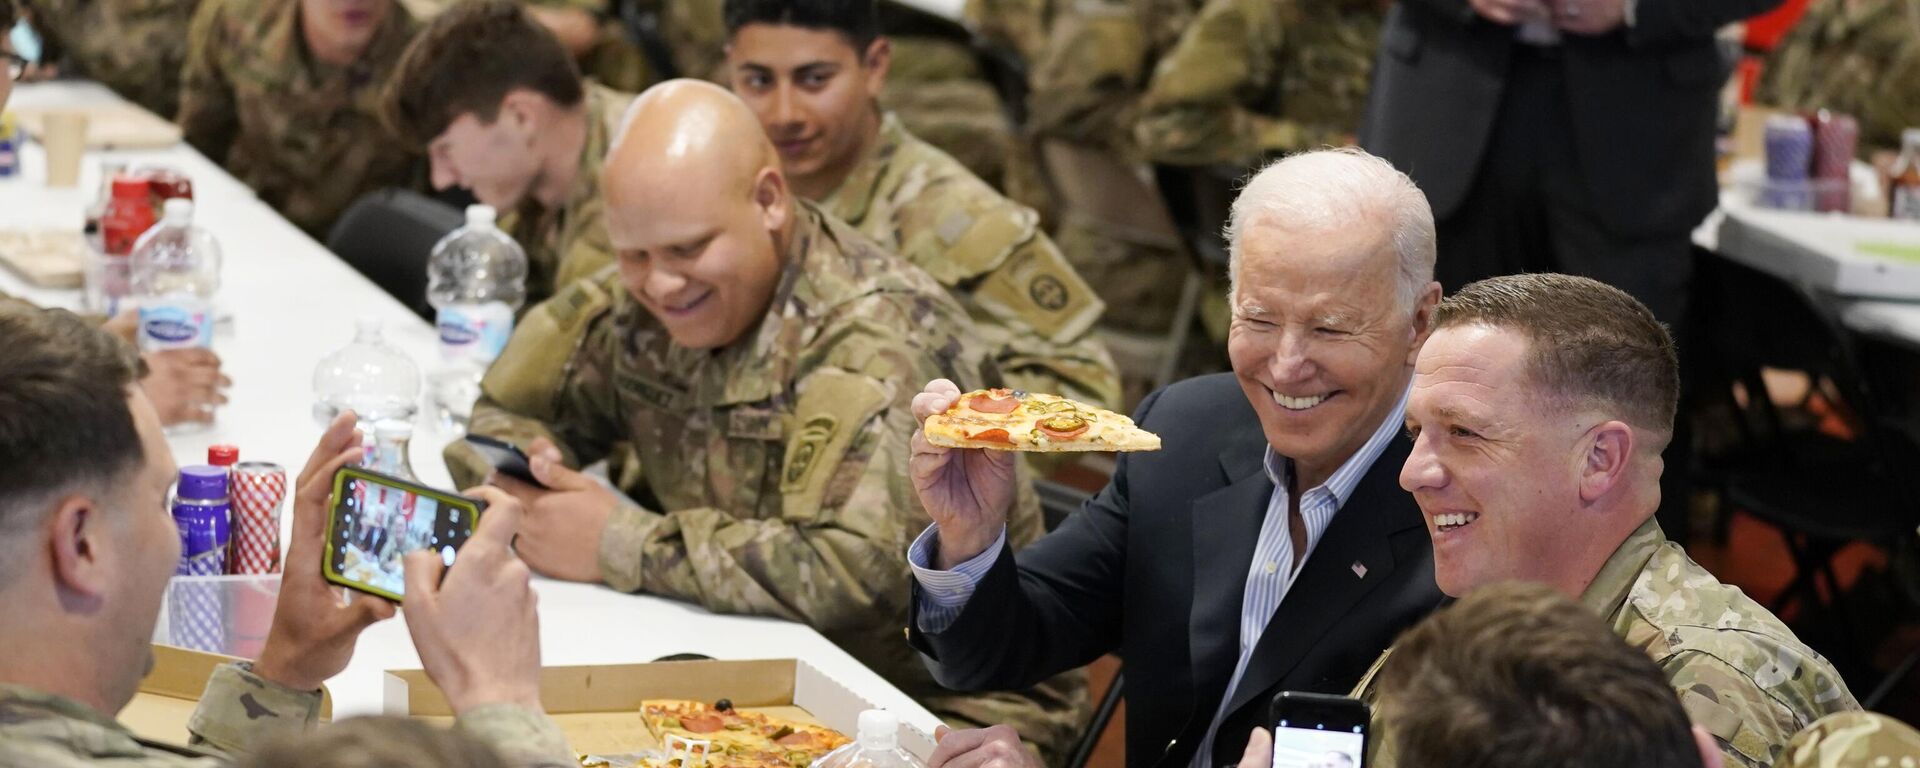 Џо Бајден једе пицу с америчким војницима у Пољској - Sputnik Србија, 1920, 25.03.2022